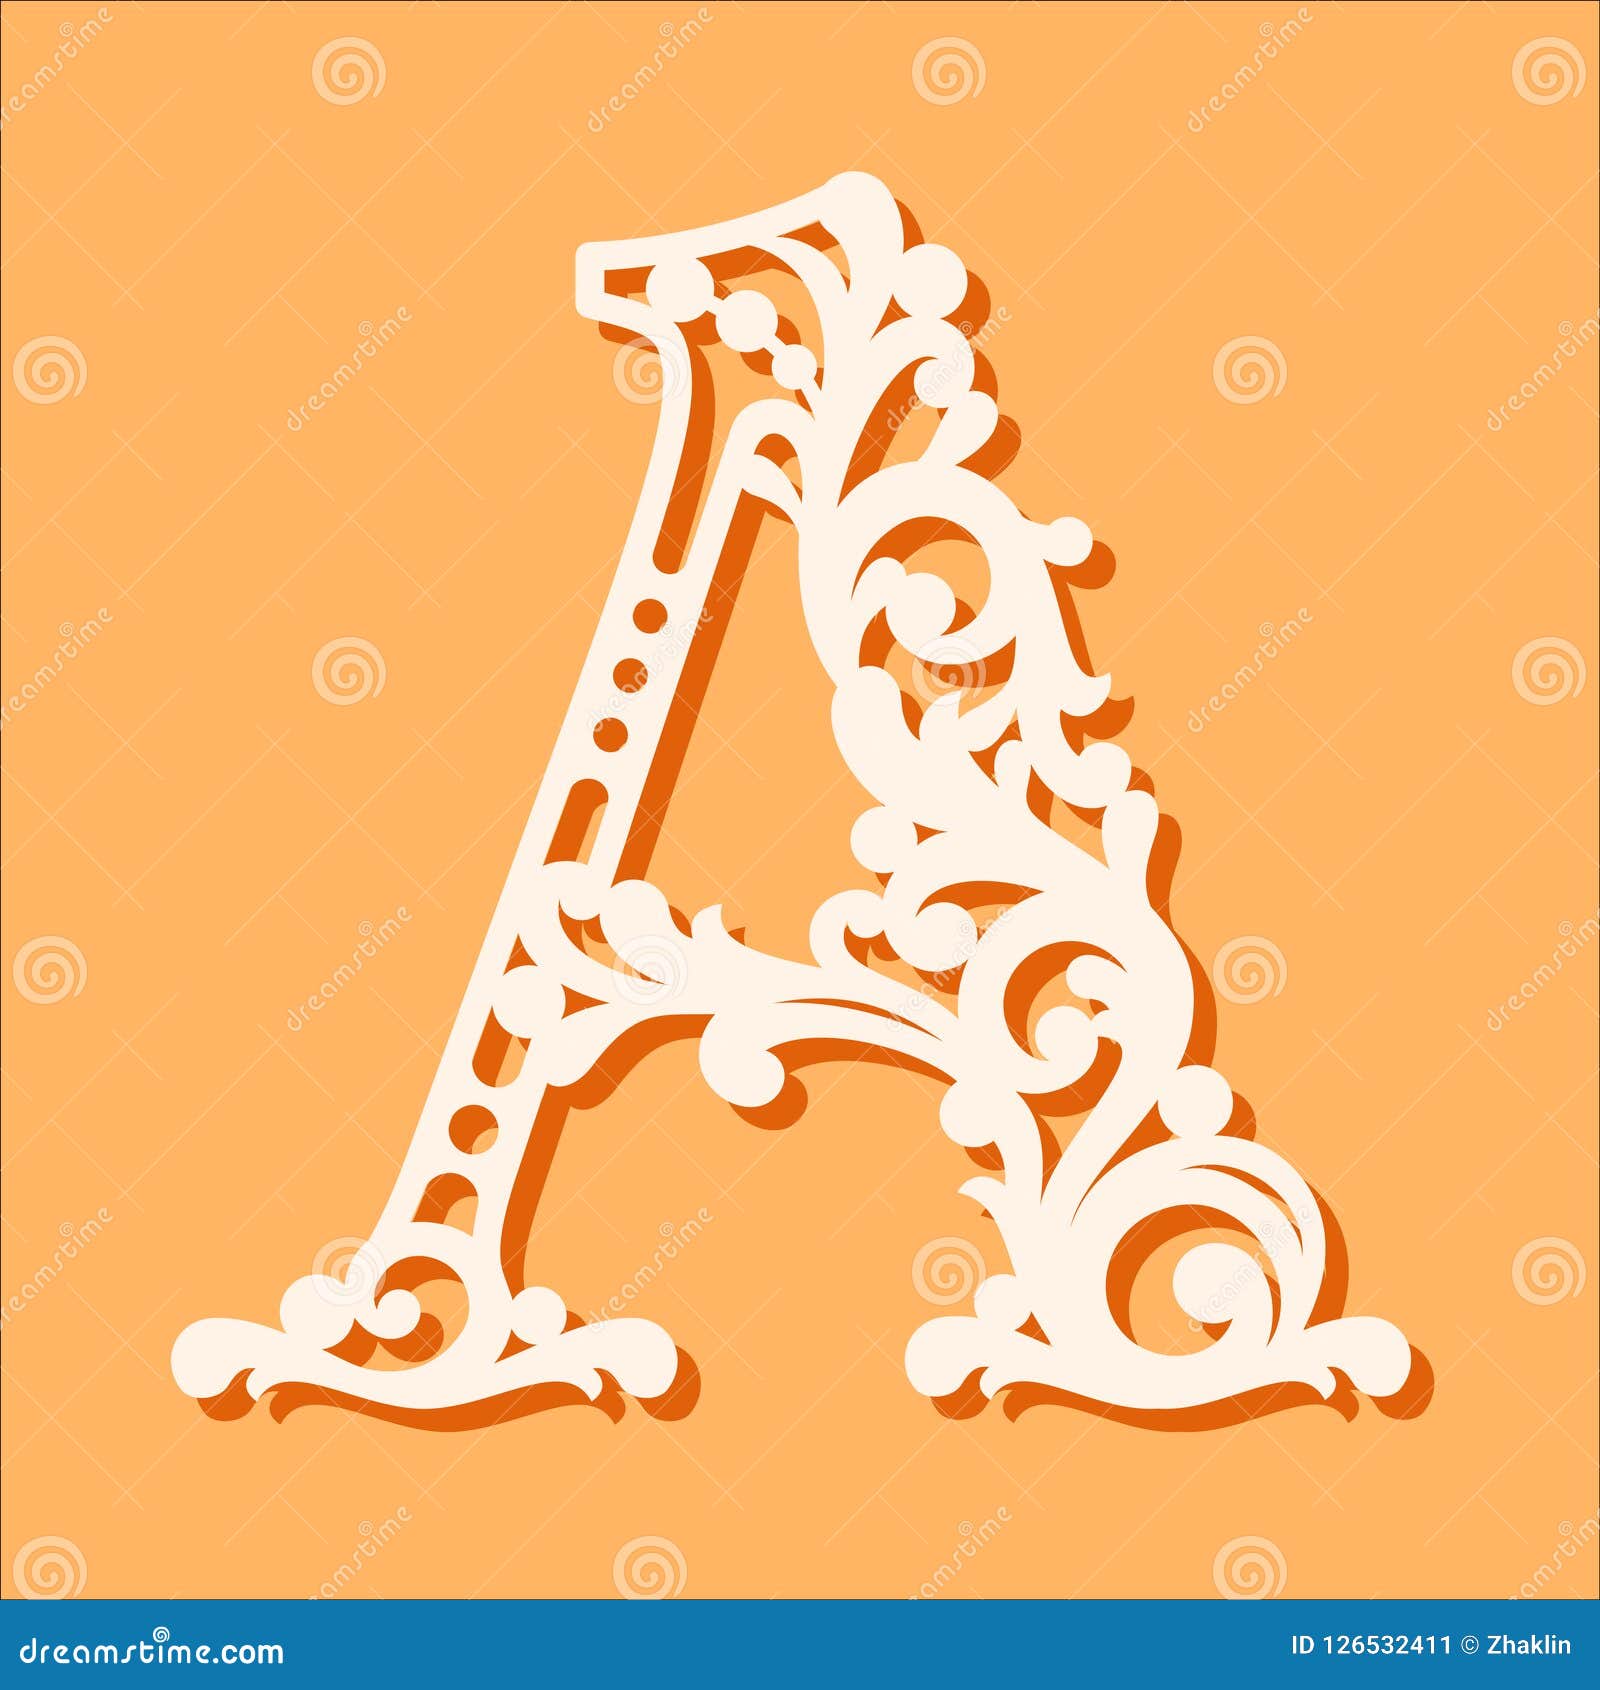 laser cut template. initial monogram letters. fancy floral alphabet letter.